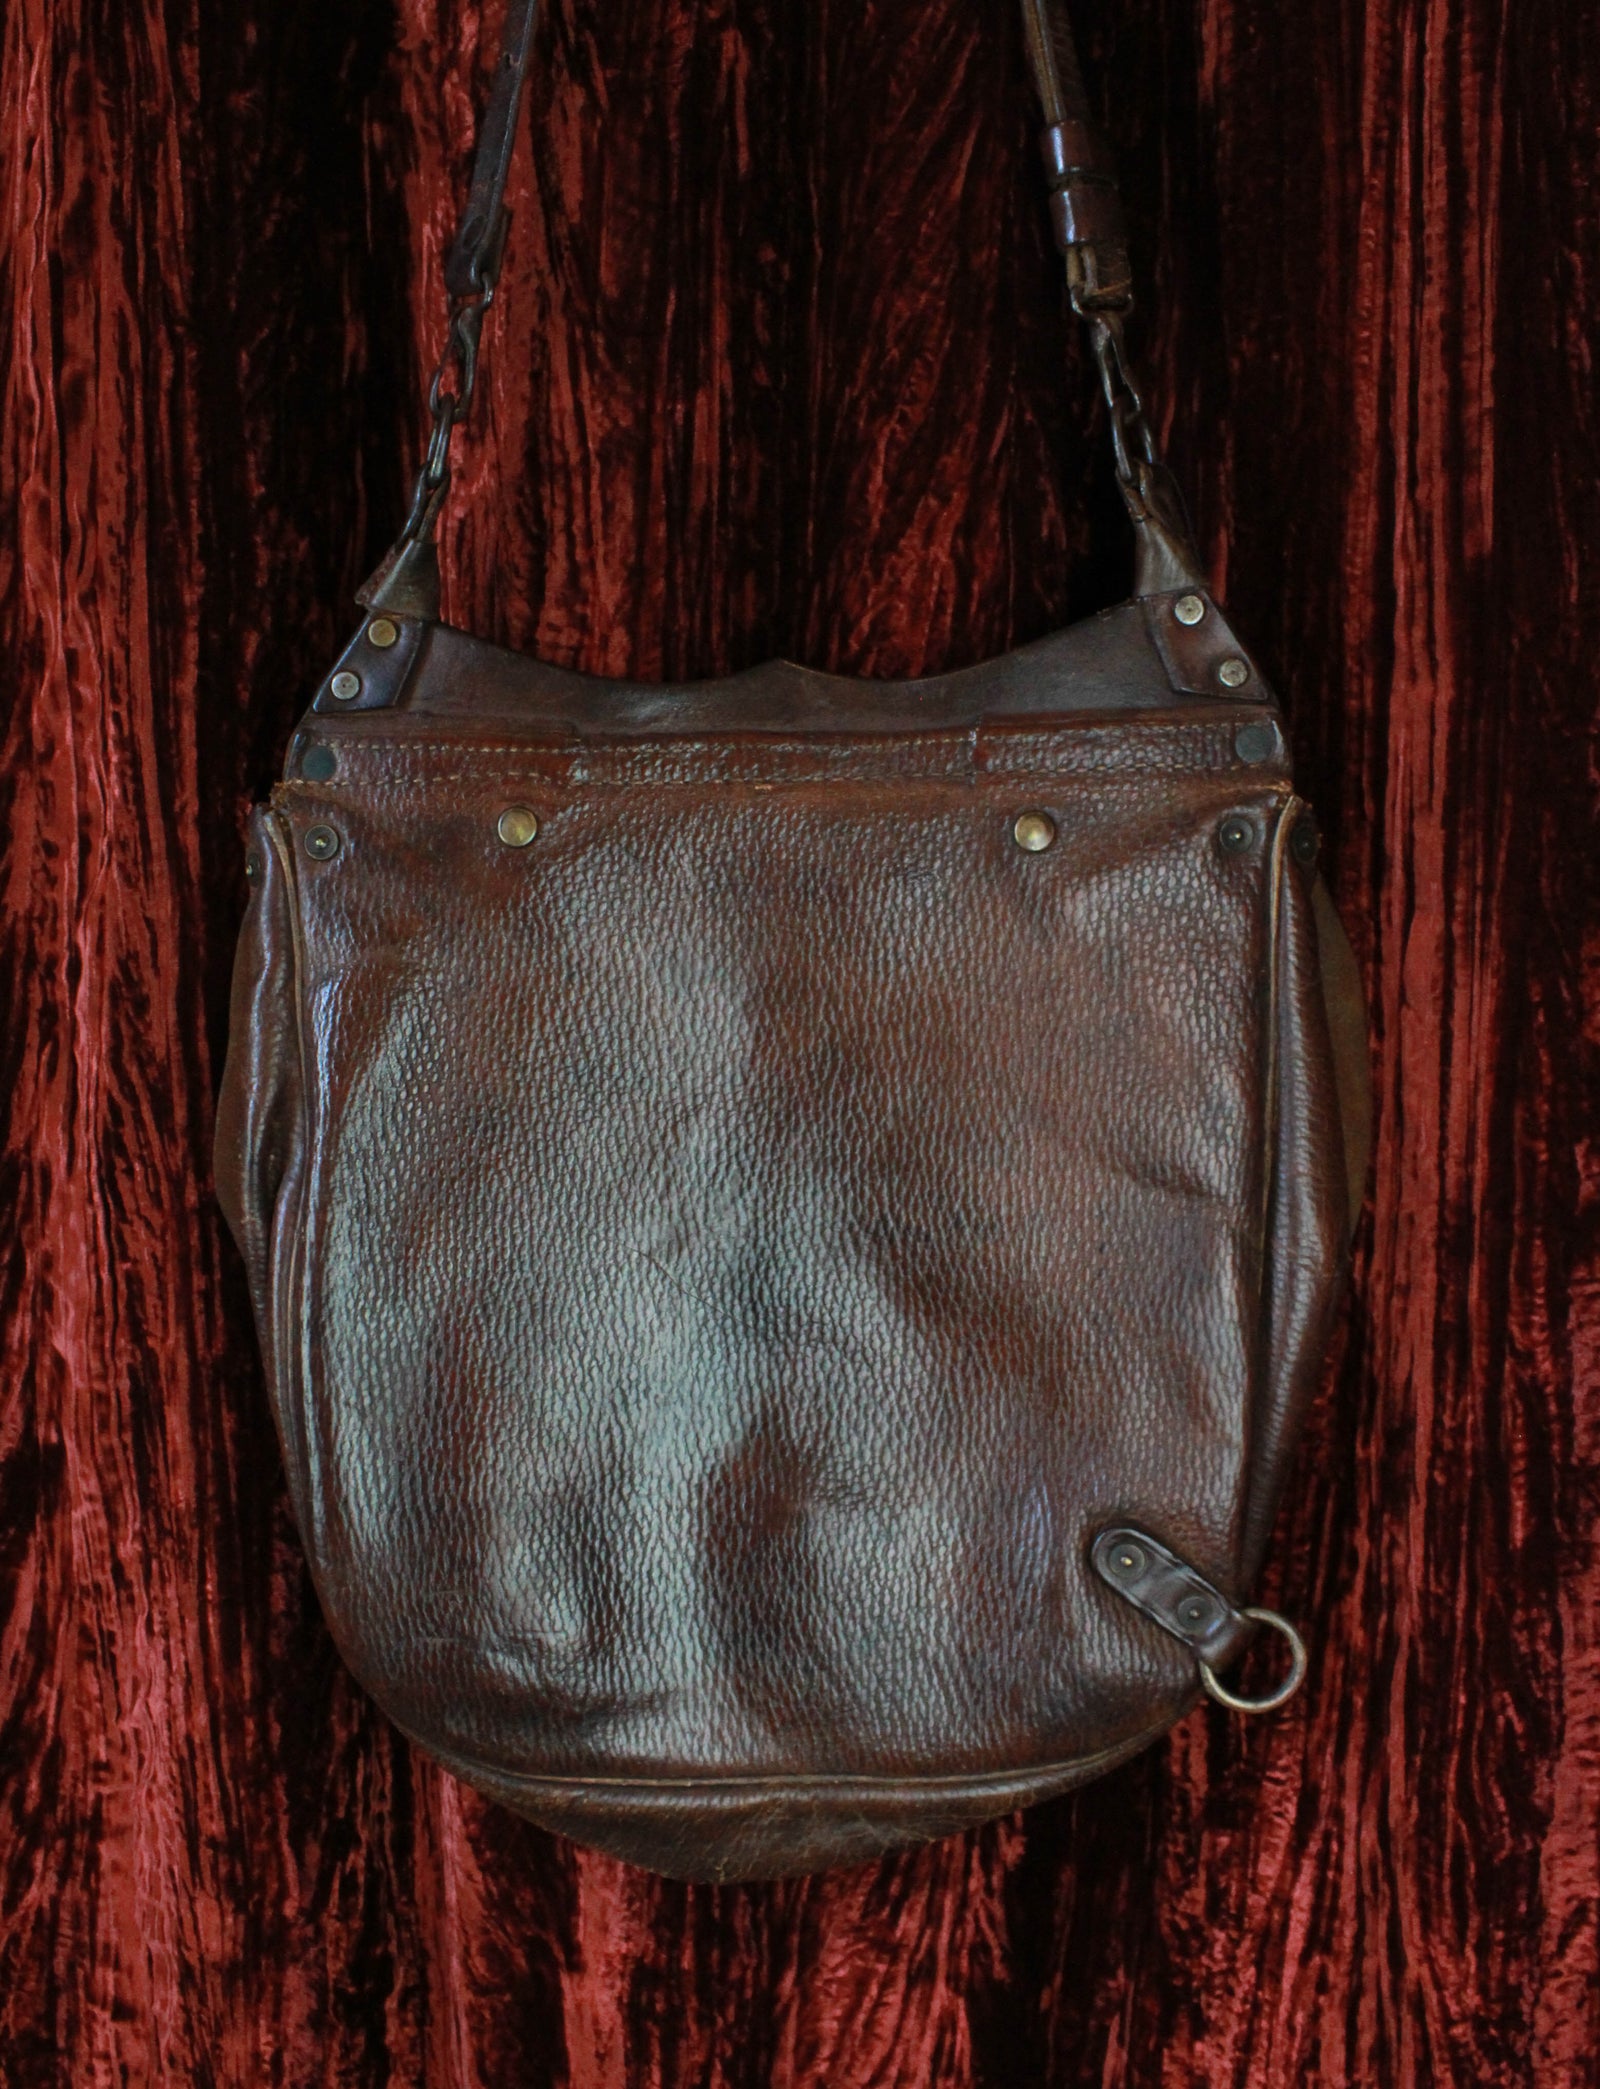 Saddle Women's Small Vintage Embroidered Leather Shoulder Bag